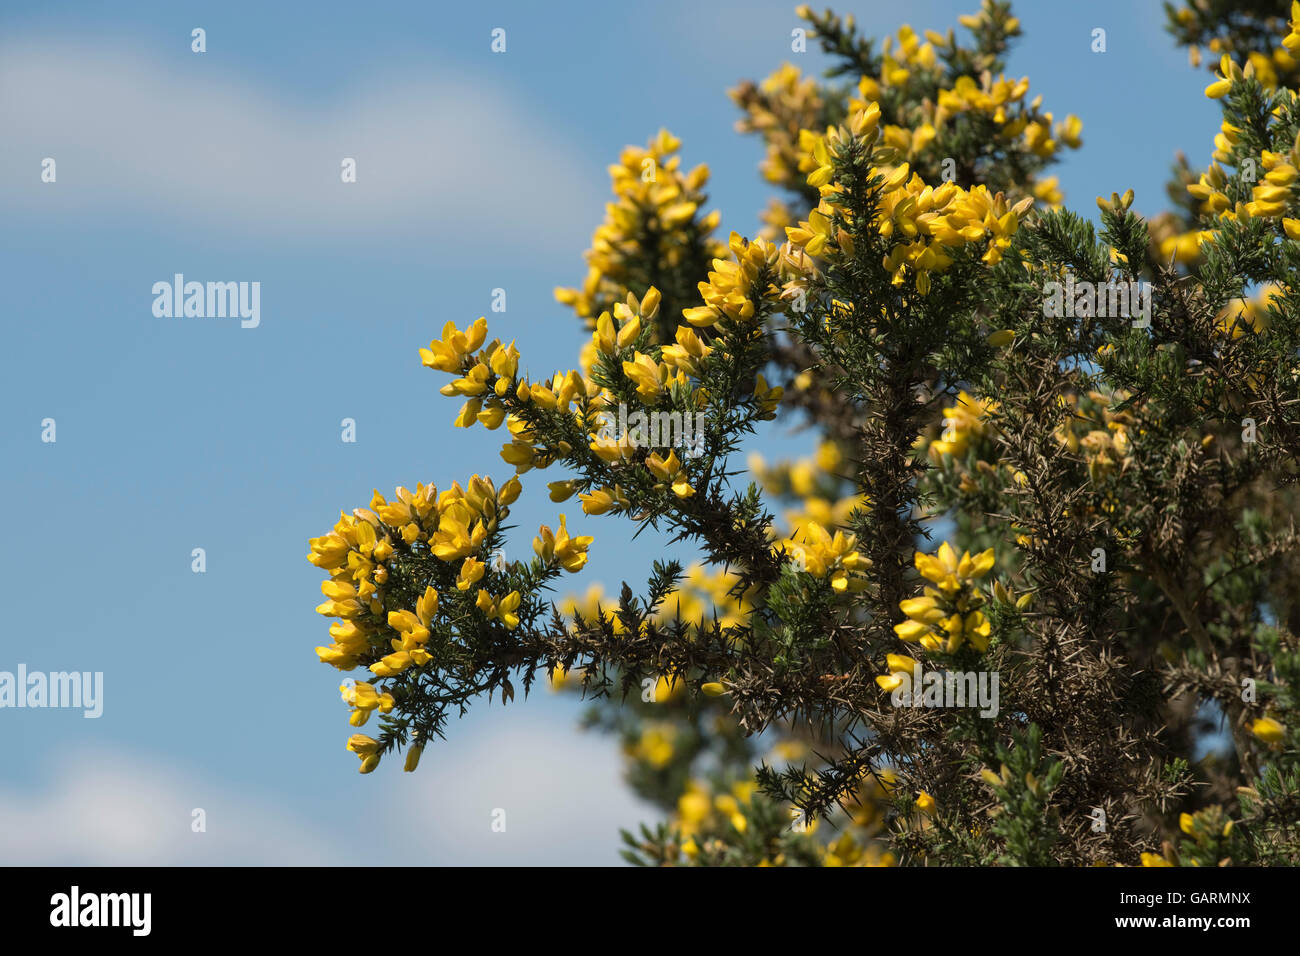 Fleurs jaunes de l'ajonc ou un bush furze, Ulex europaeus, contre un ciel bleu au printemps, Mai Banque D'Images